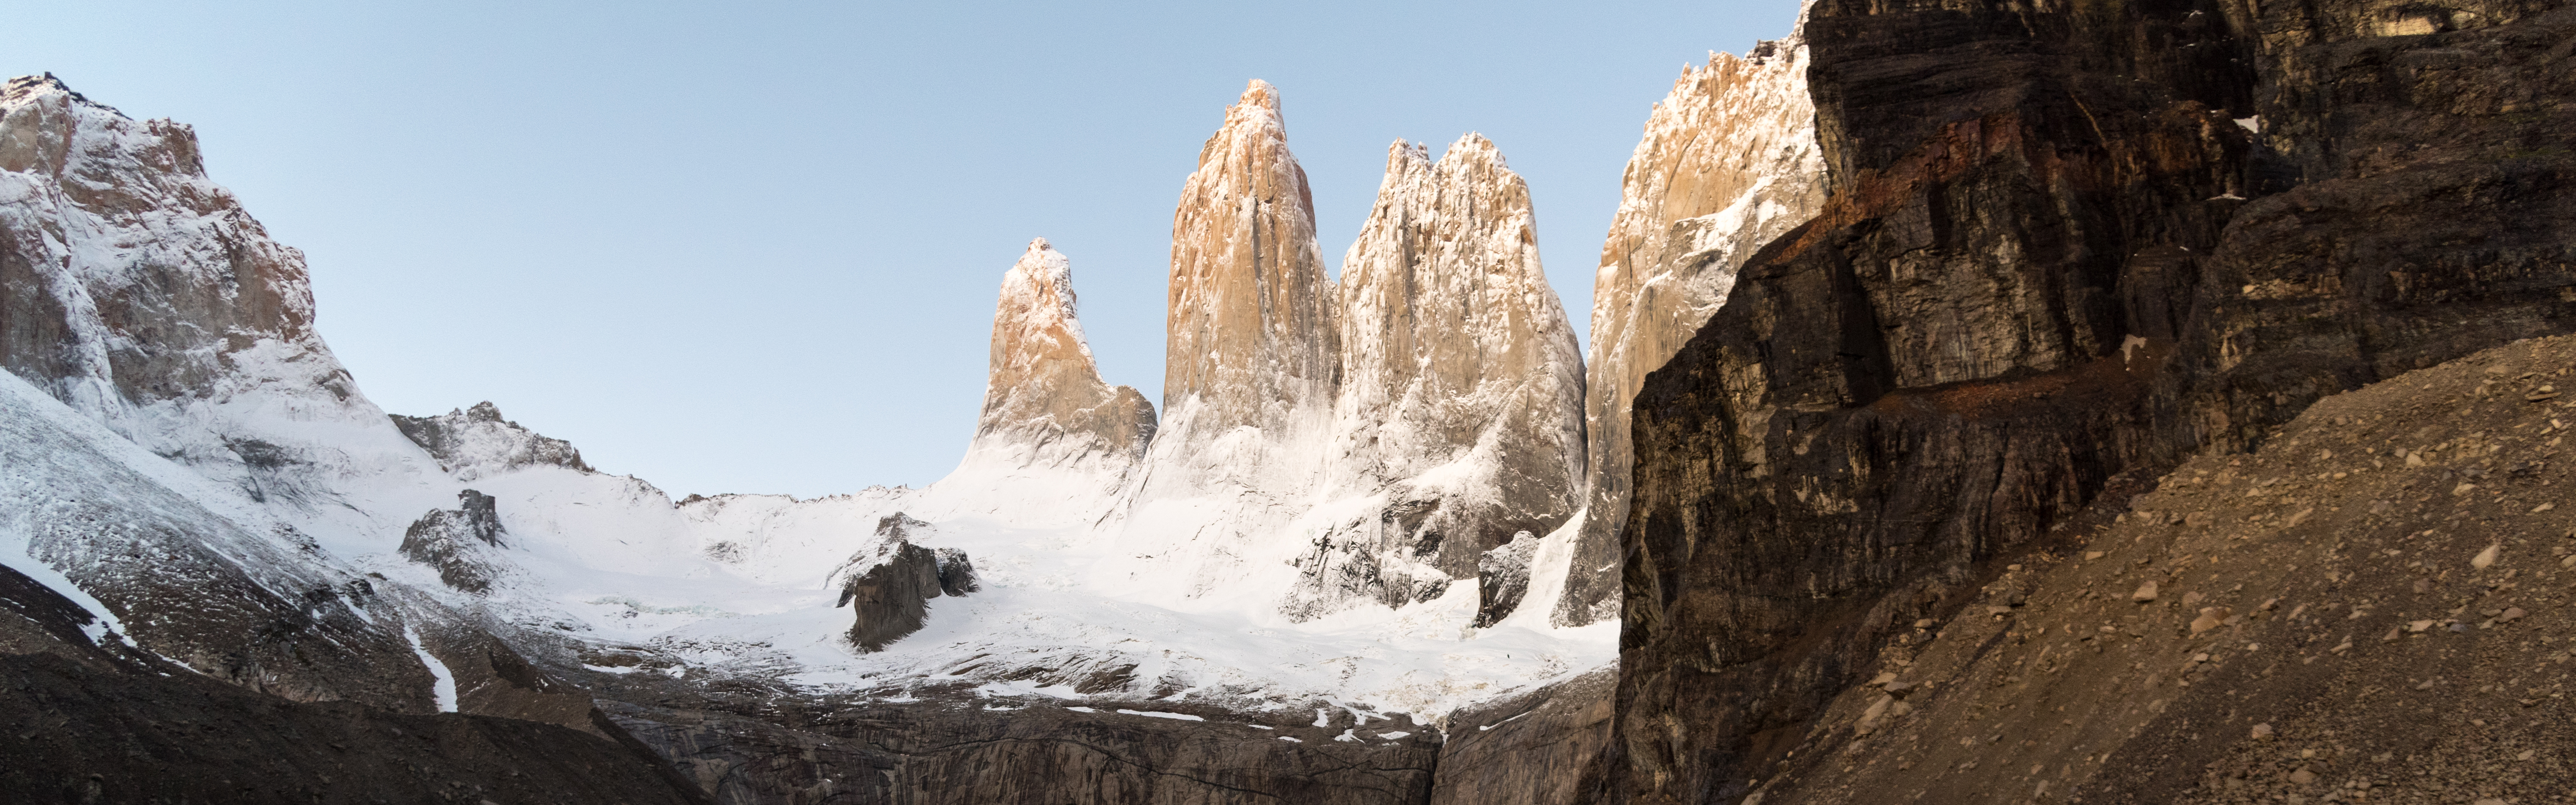 Torres Del Paine Chile W-Trek